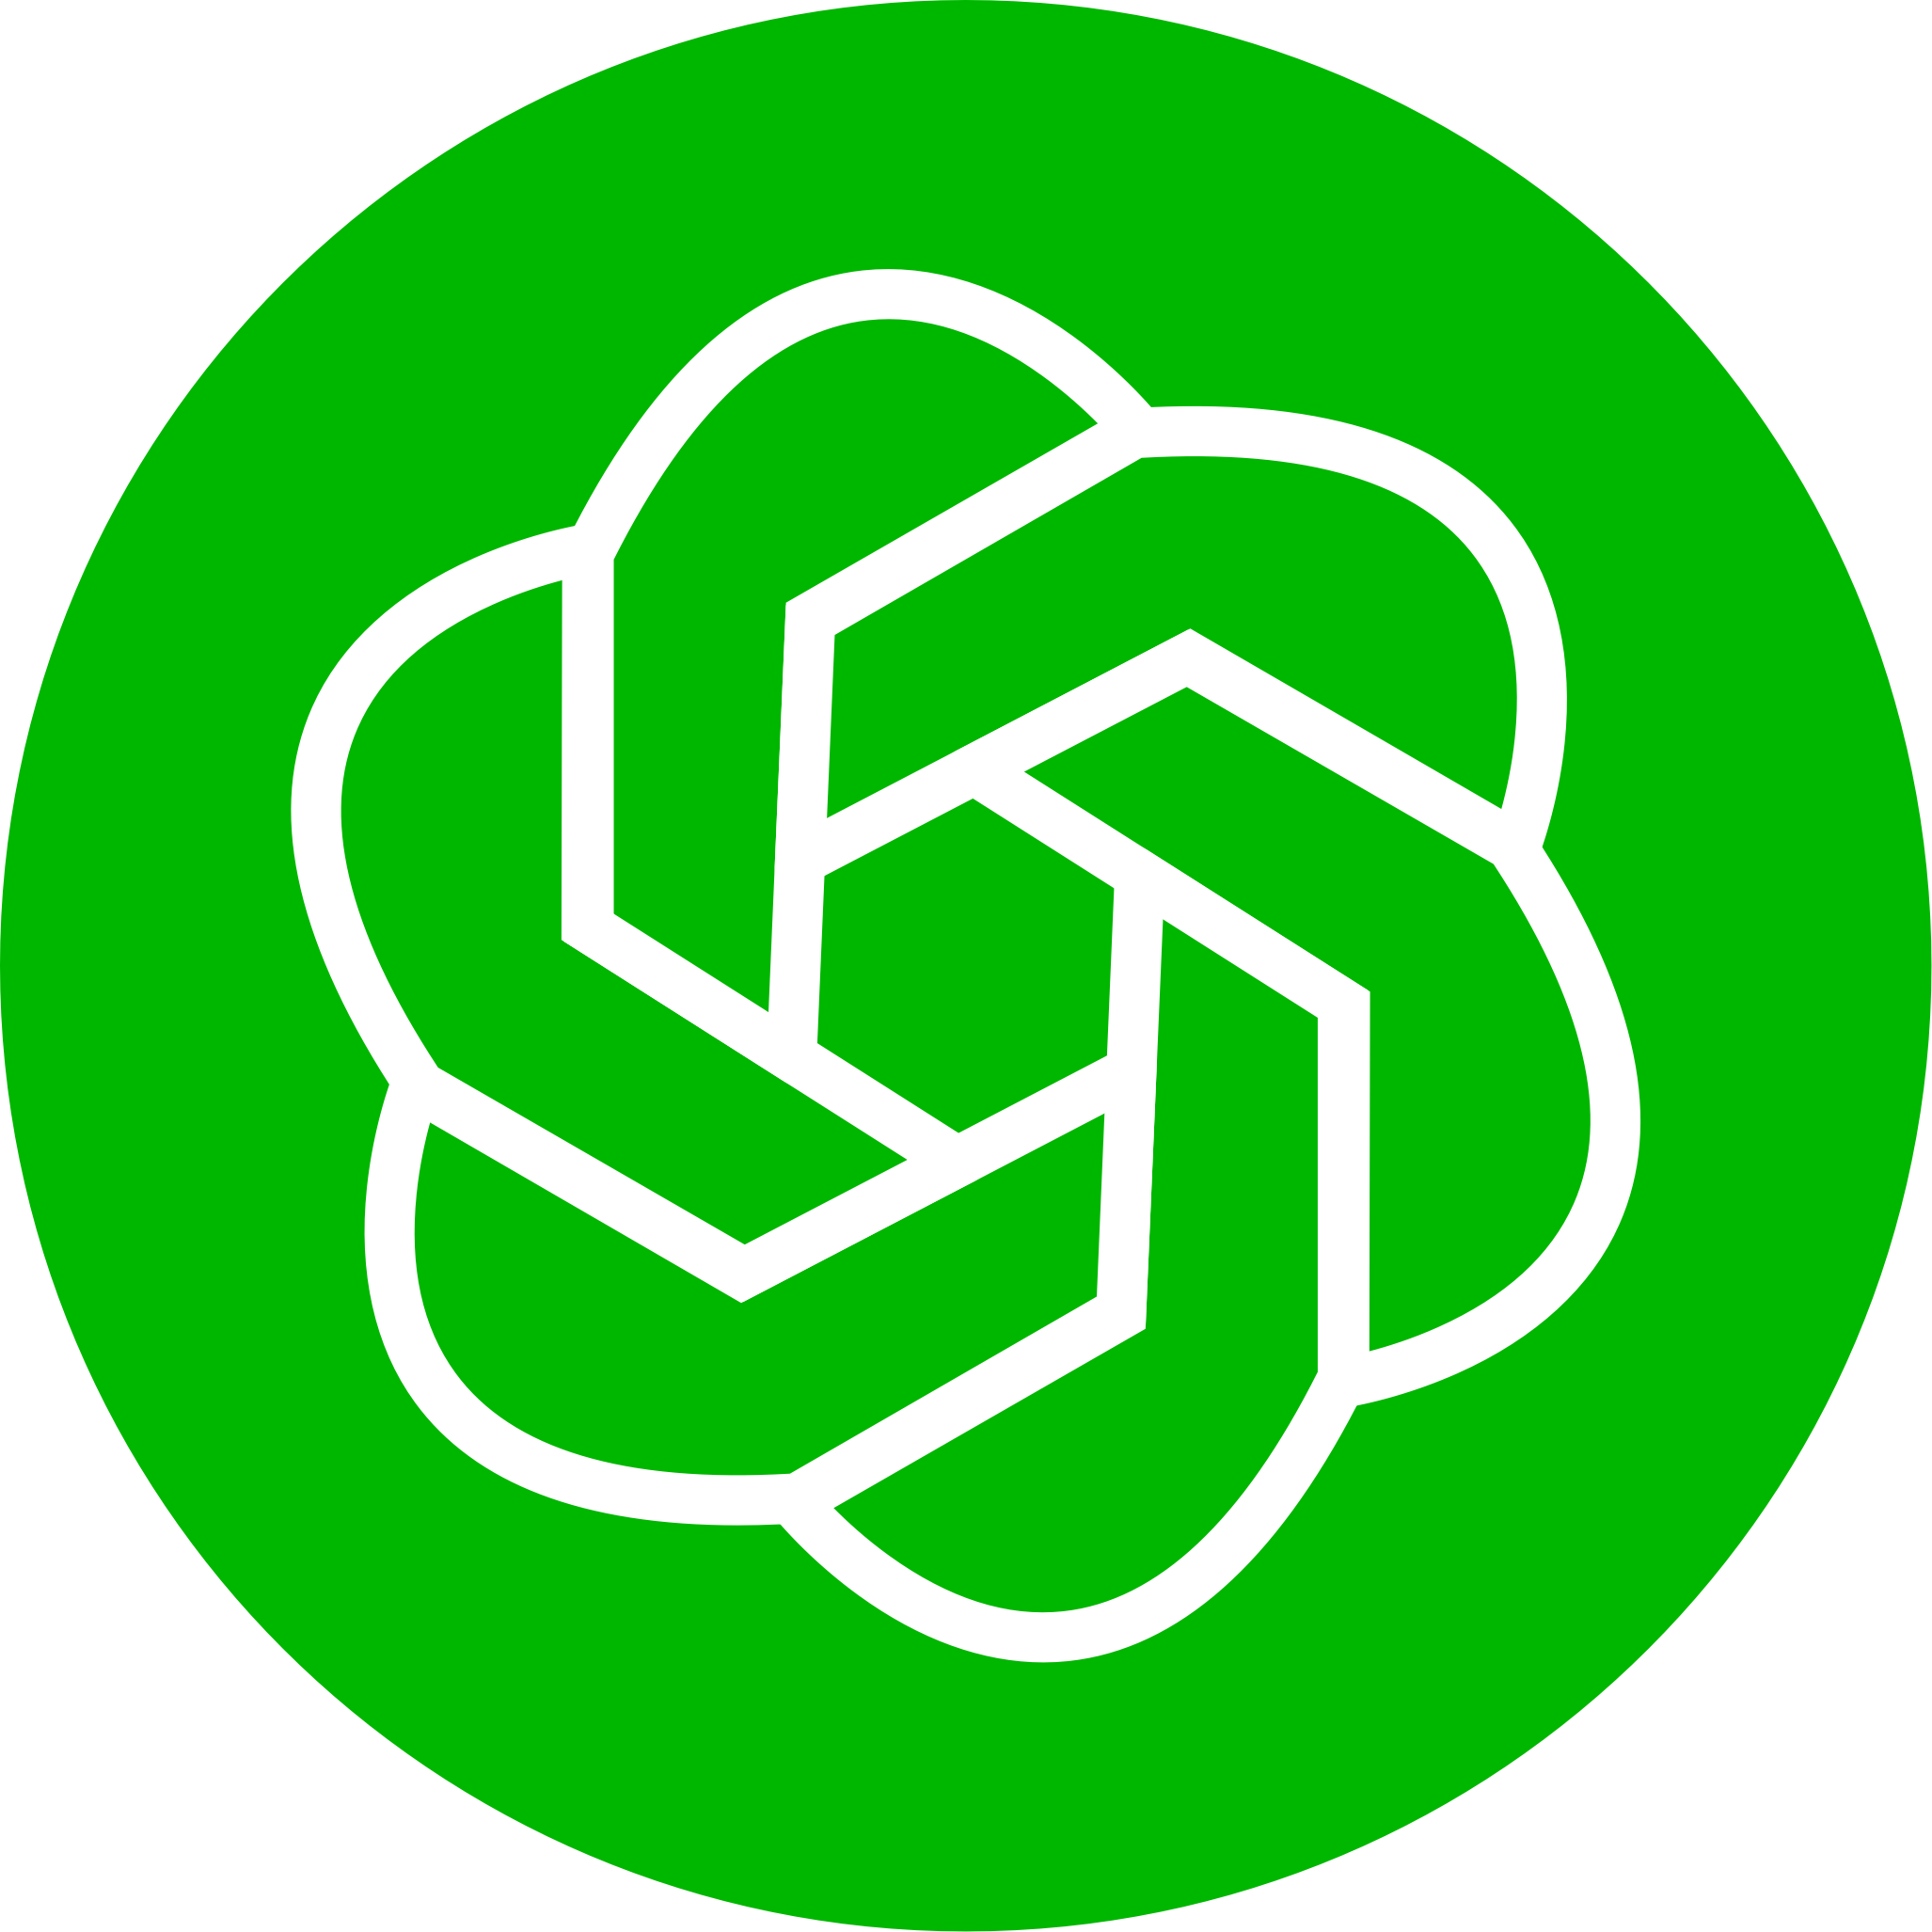 Circle Green logo ChatGPT png visual studio marketplace #42628